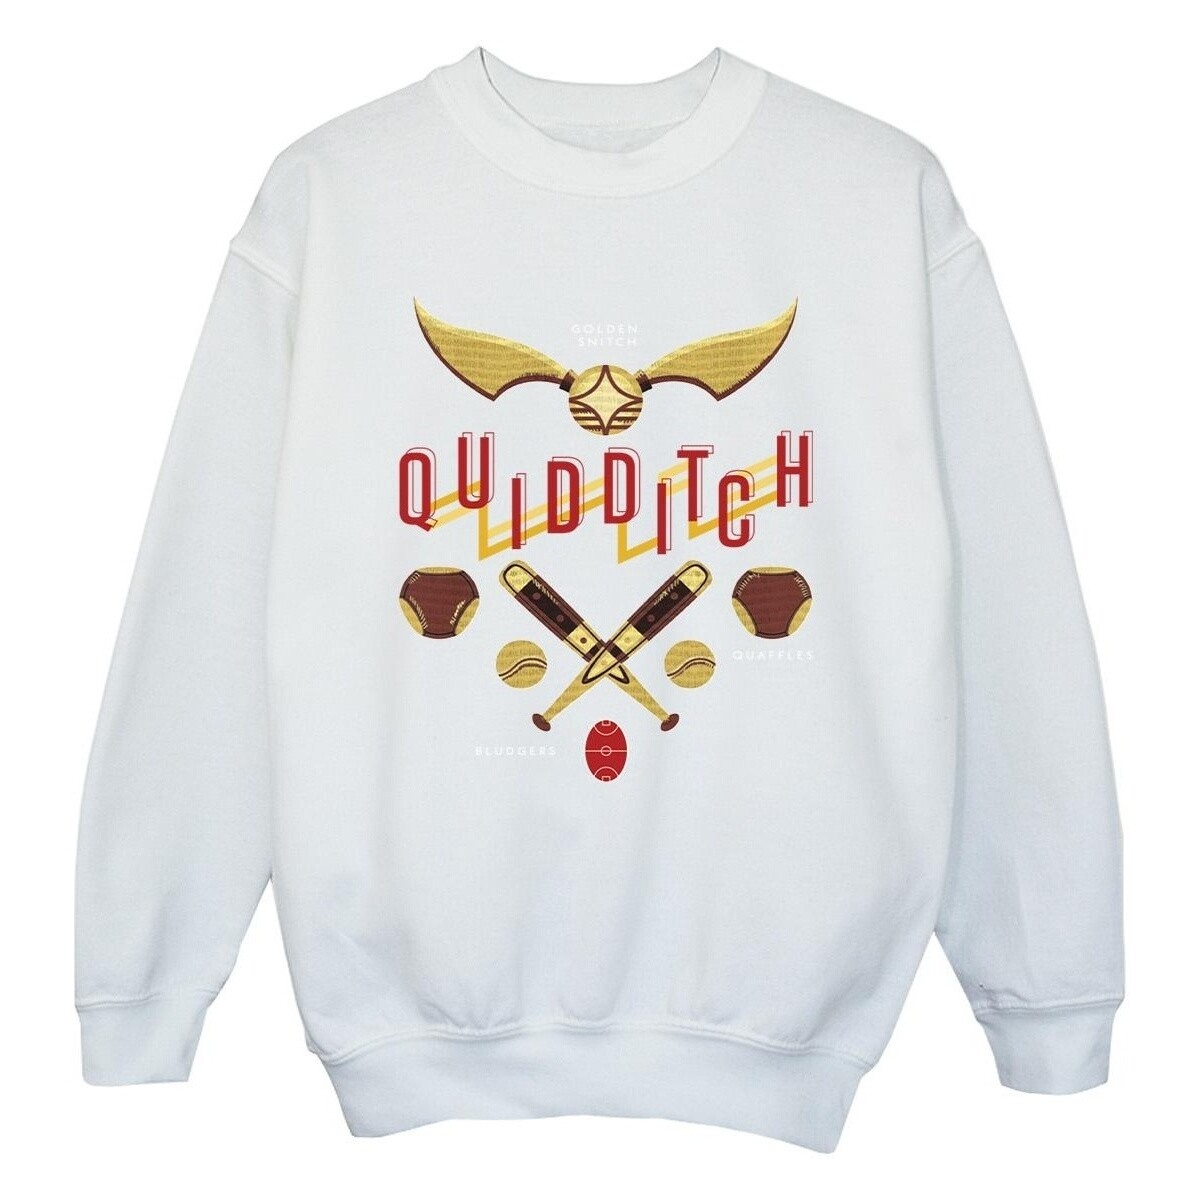 Vêtements Fille Sweats Harry Potter Quidditch Golden Snitch Blanc